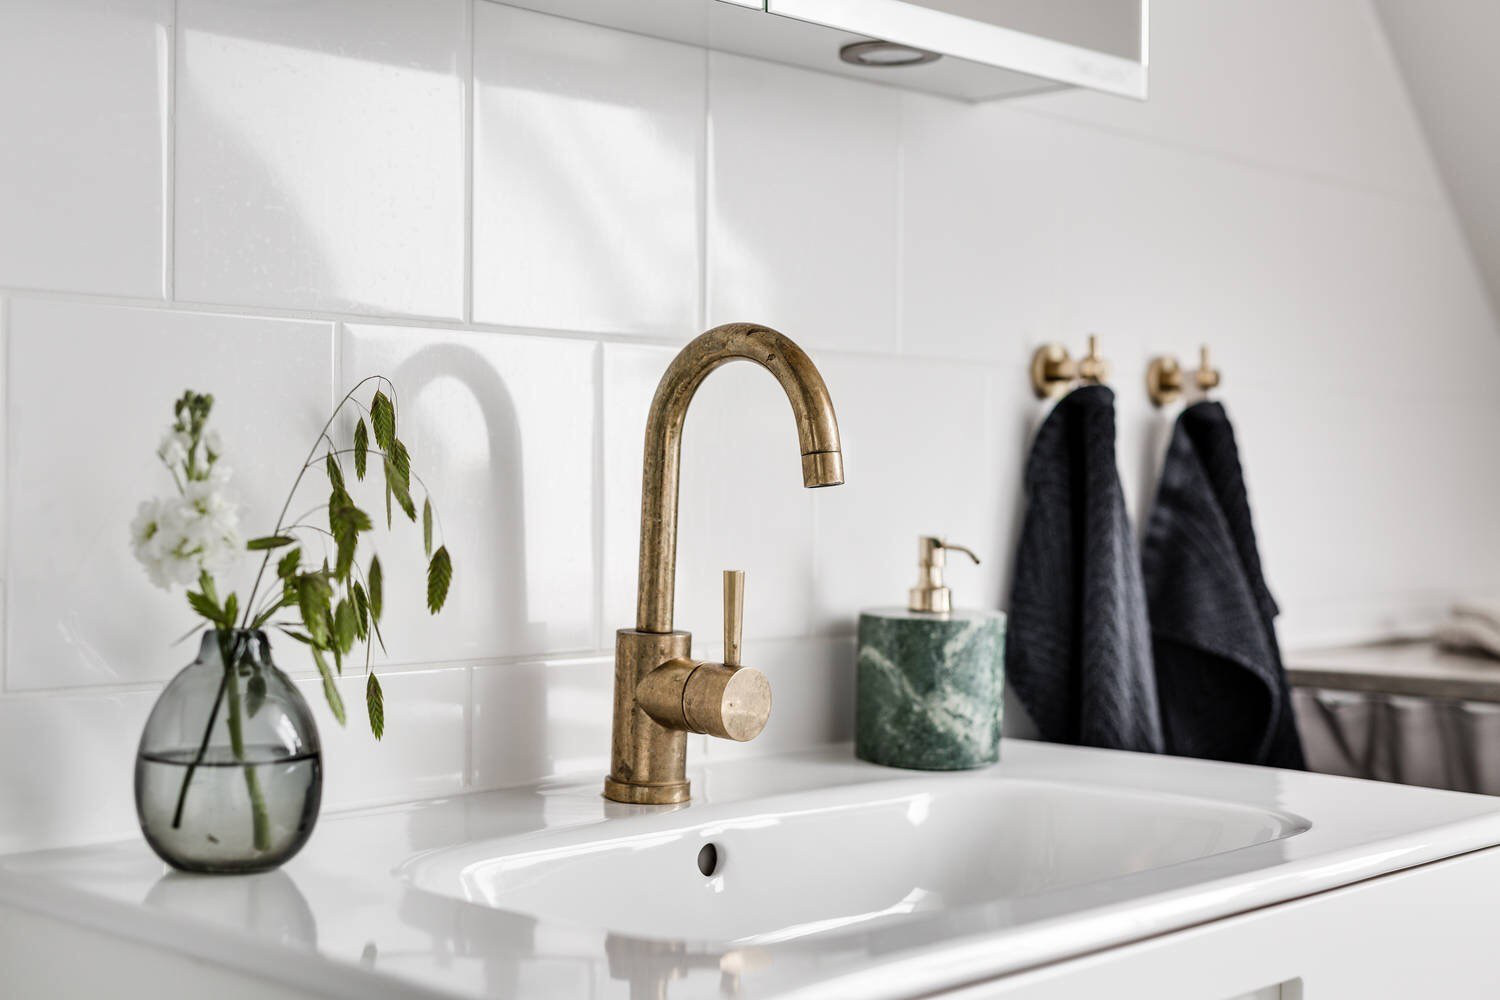 Hình ảnh cận cảnh bình cây thủy tinh trong suốt đặt trên bệ bồn rửa xua tan vẻ đơn điệu của phòng tắm  ​tông màu trắng xám chủ đạo.